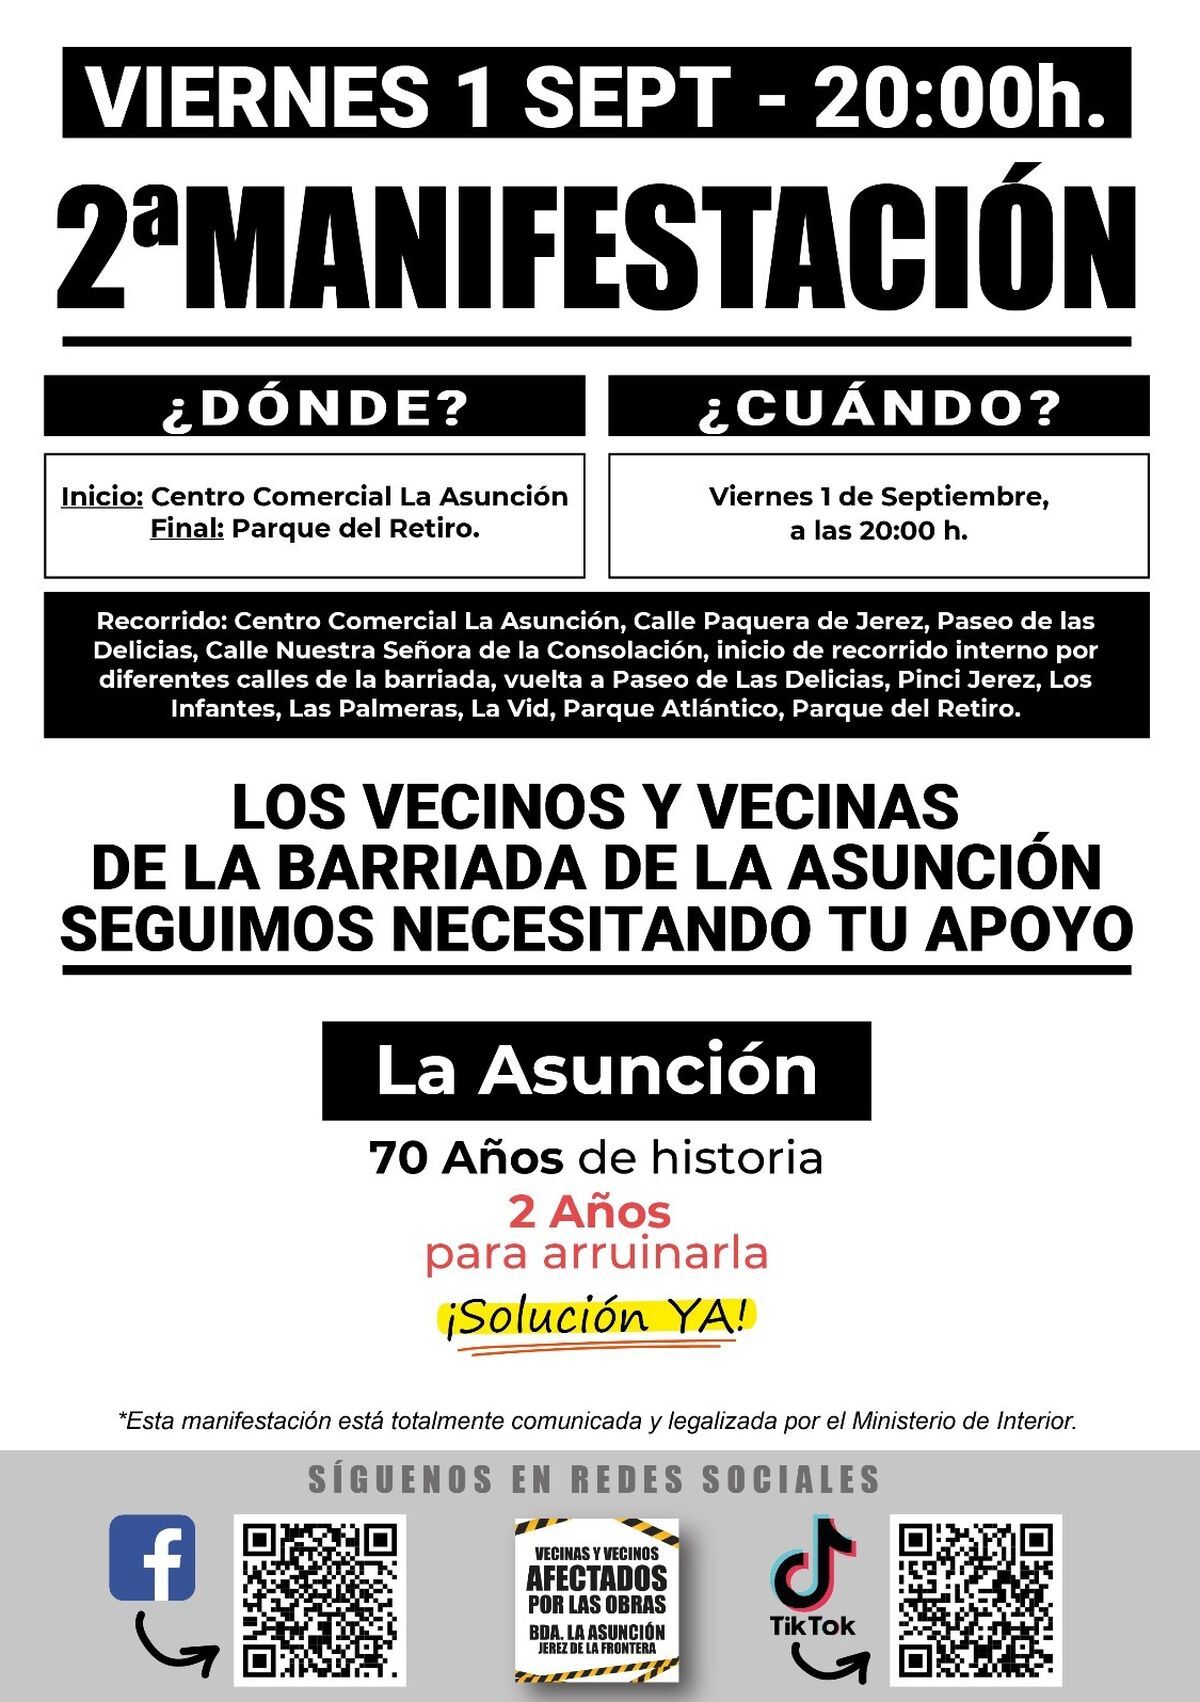 Cartel de la manifestación de la barriada de La Asunción.